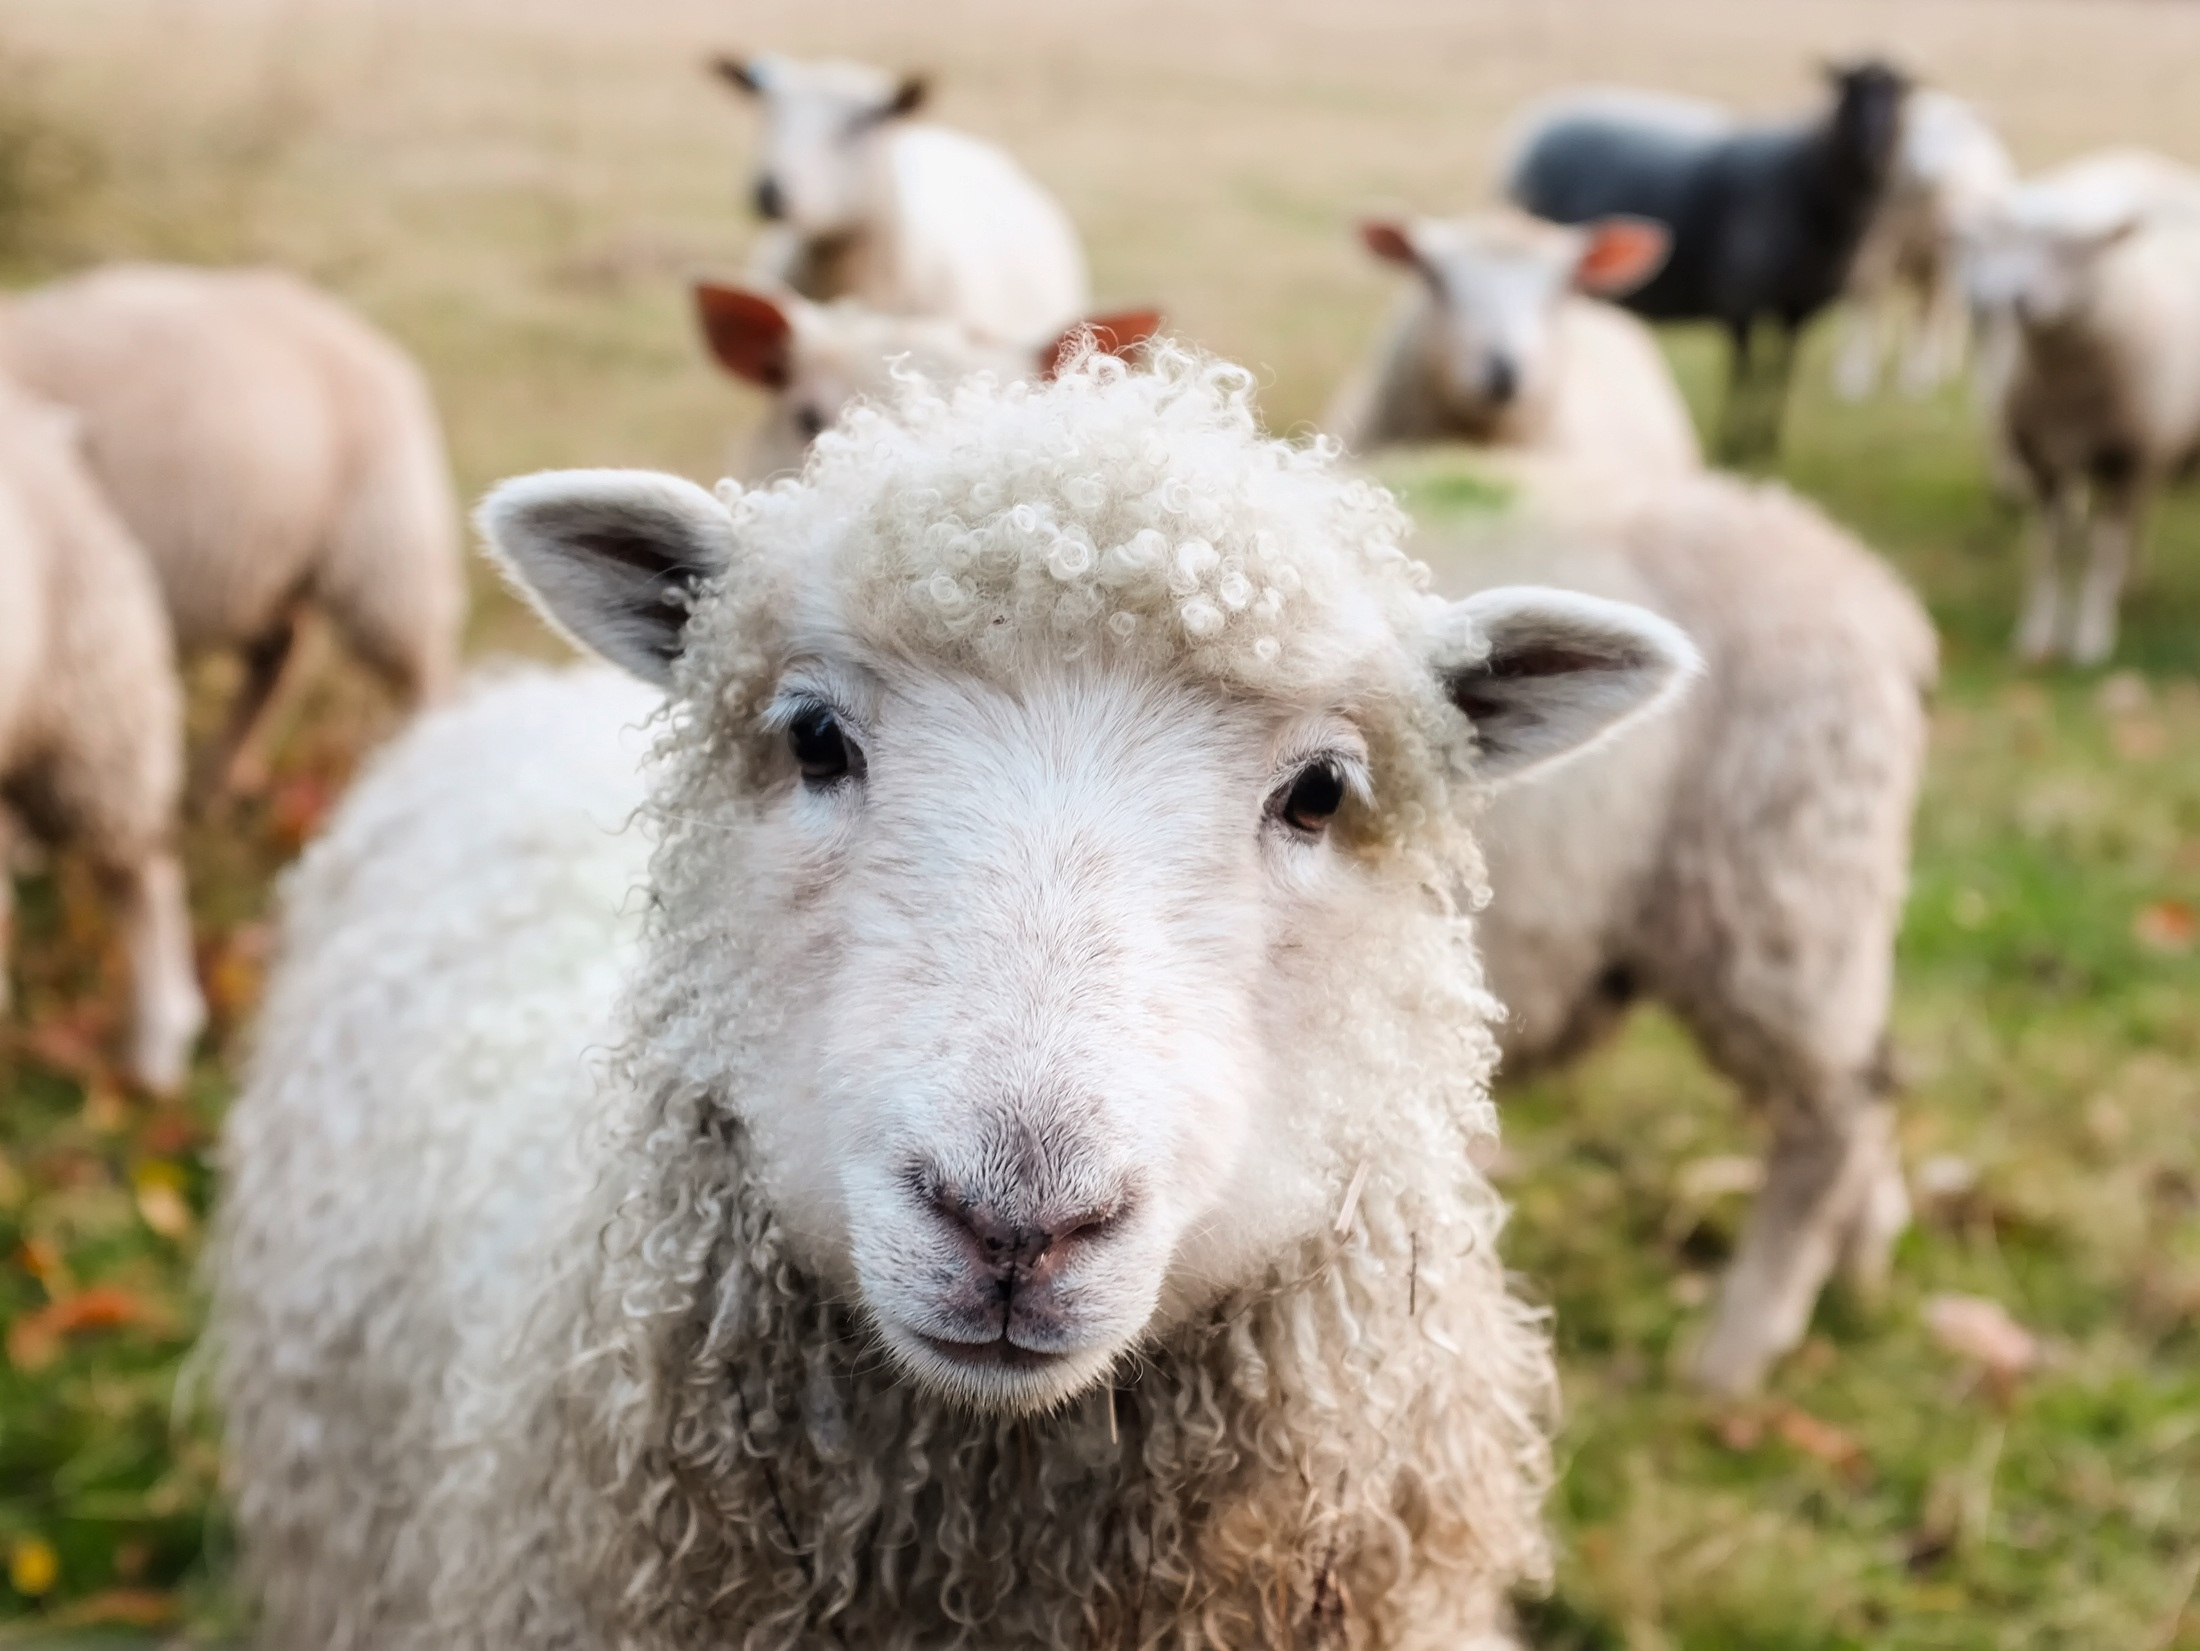 Les scientifiques ont testé le "gelée" sur les moutons, dont les membres postérieurs ressemblent au genou humain